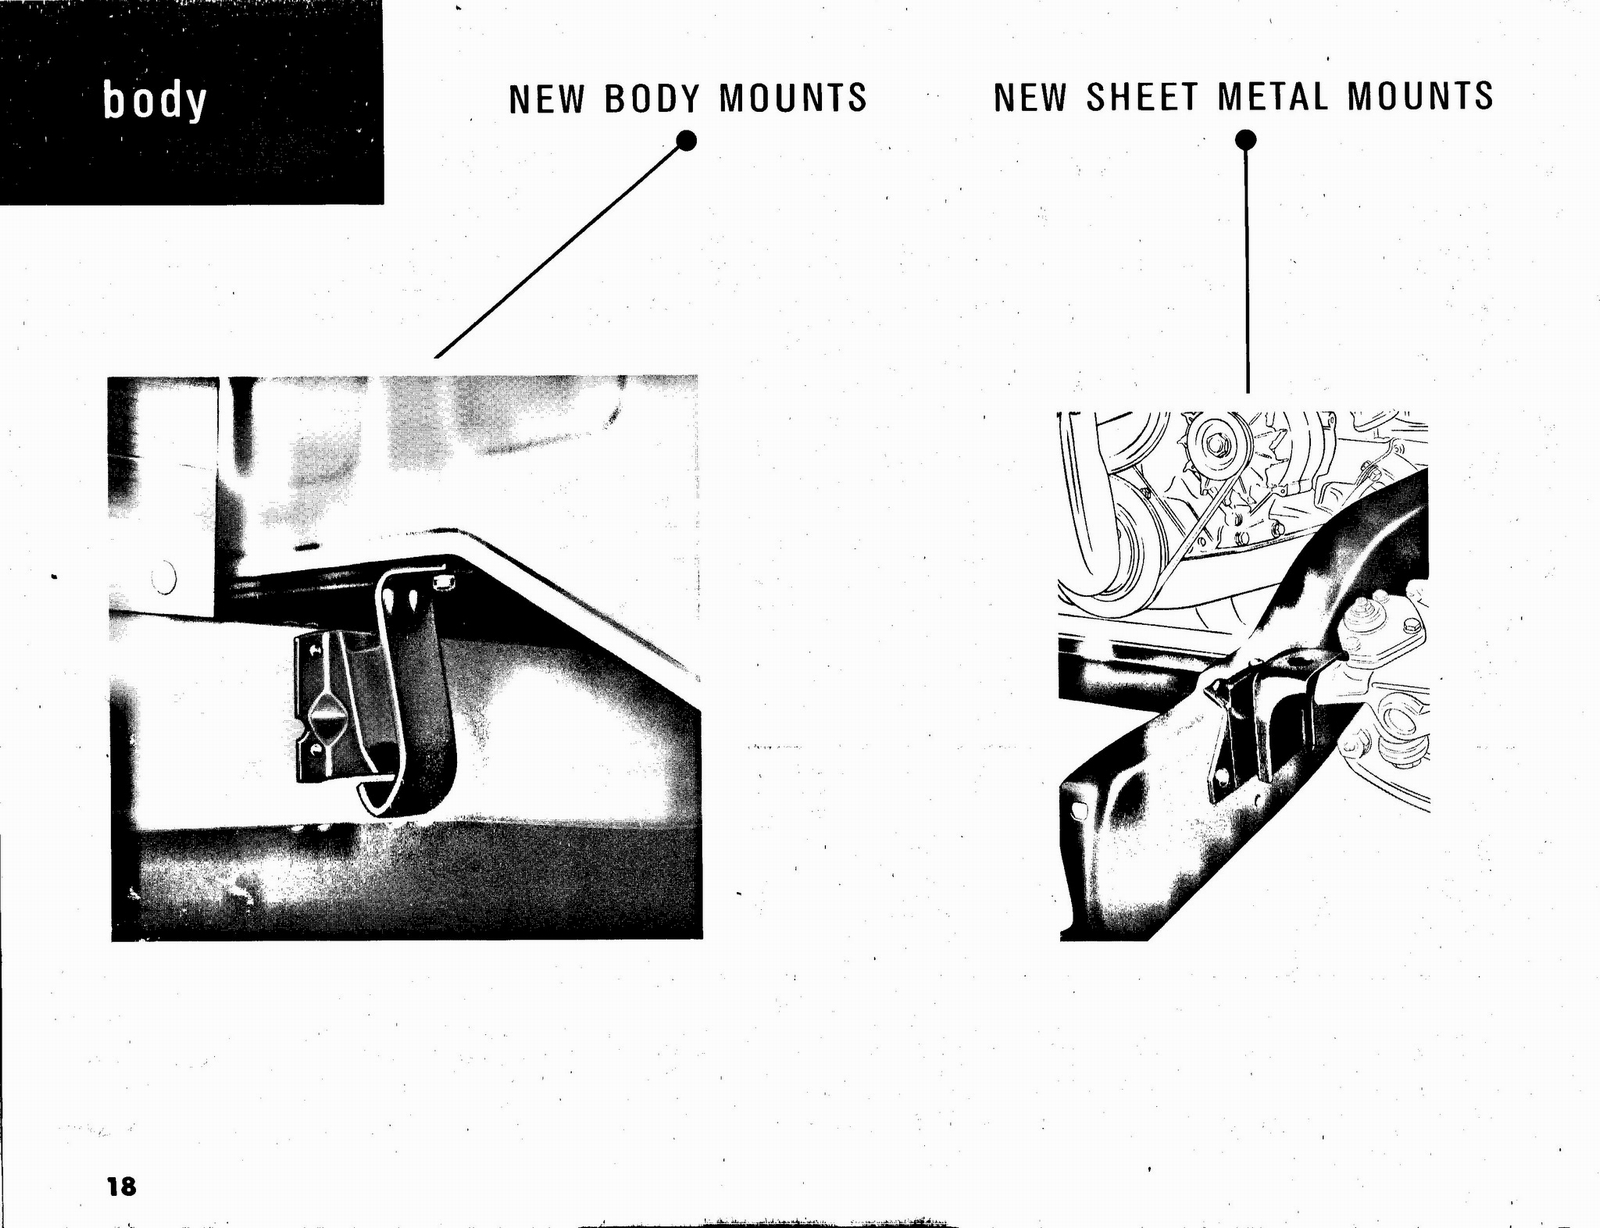 n_1963 Chevrolet Truck Engineering Features-18.jpg